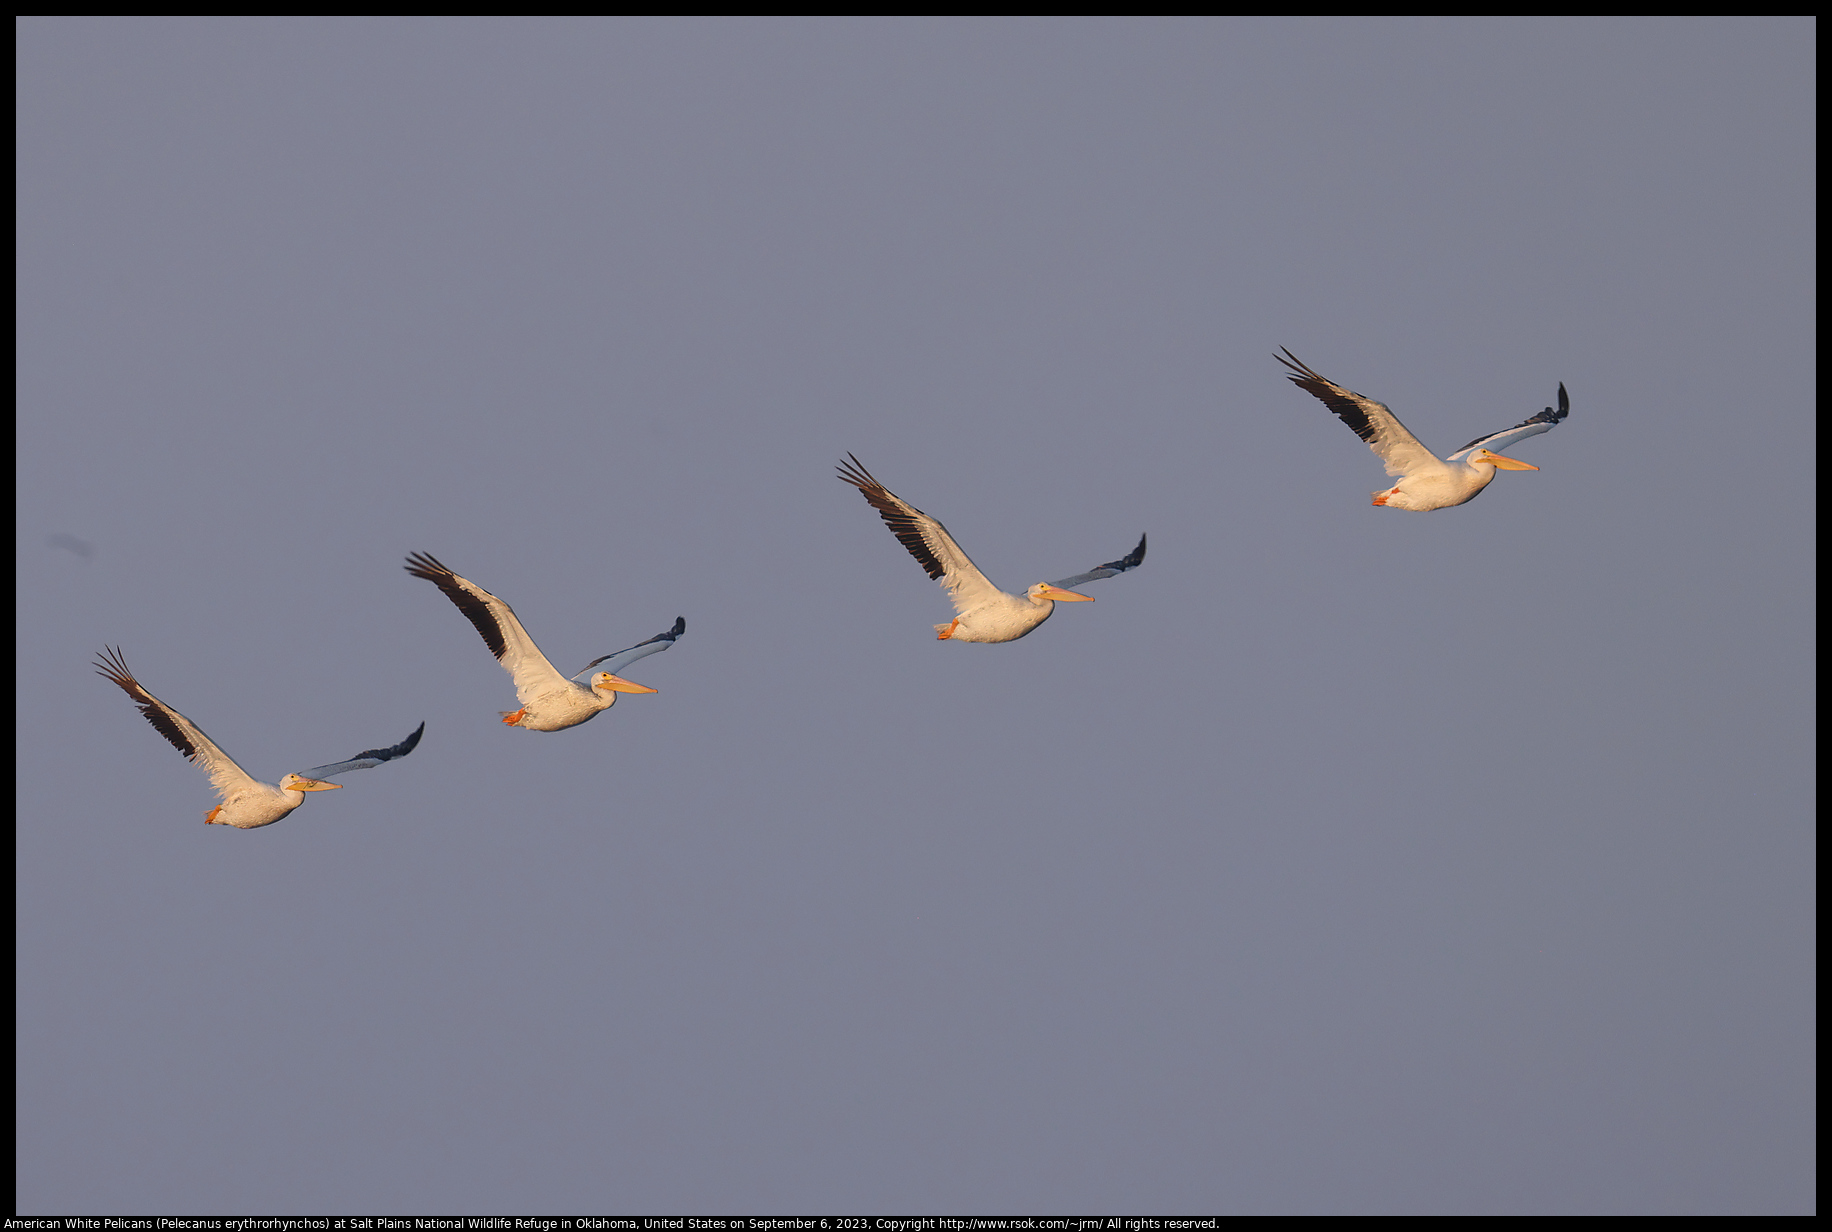 American White Pelicans (Pelecanus erythrorhynchos) at Salt Plains National Wildlife Refuge in Oklahoma, United States on September 6, 2023